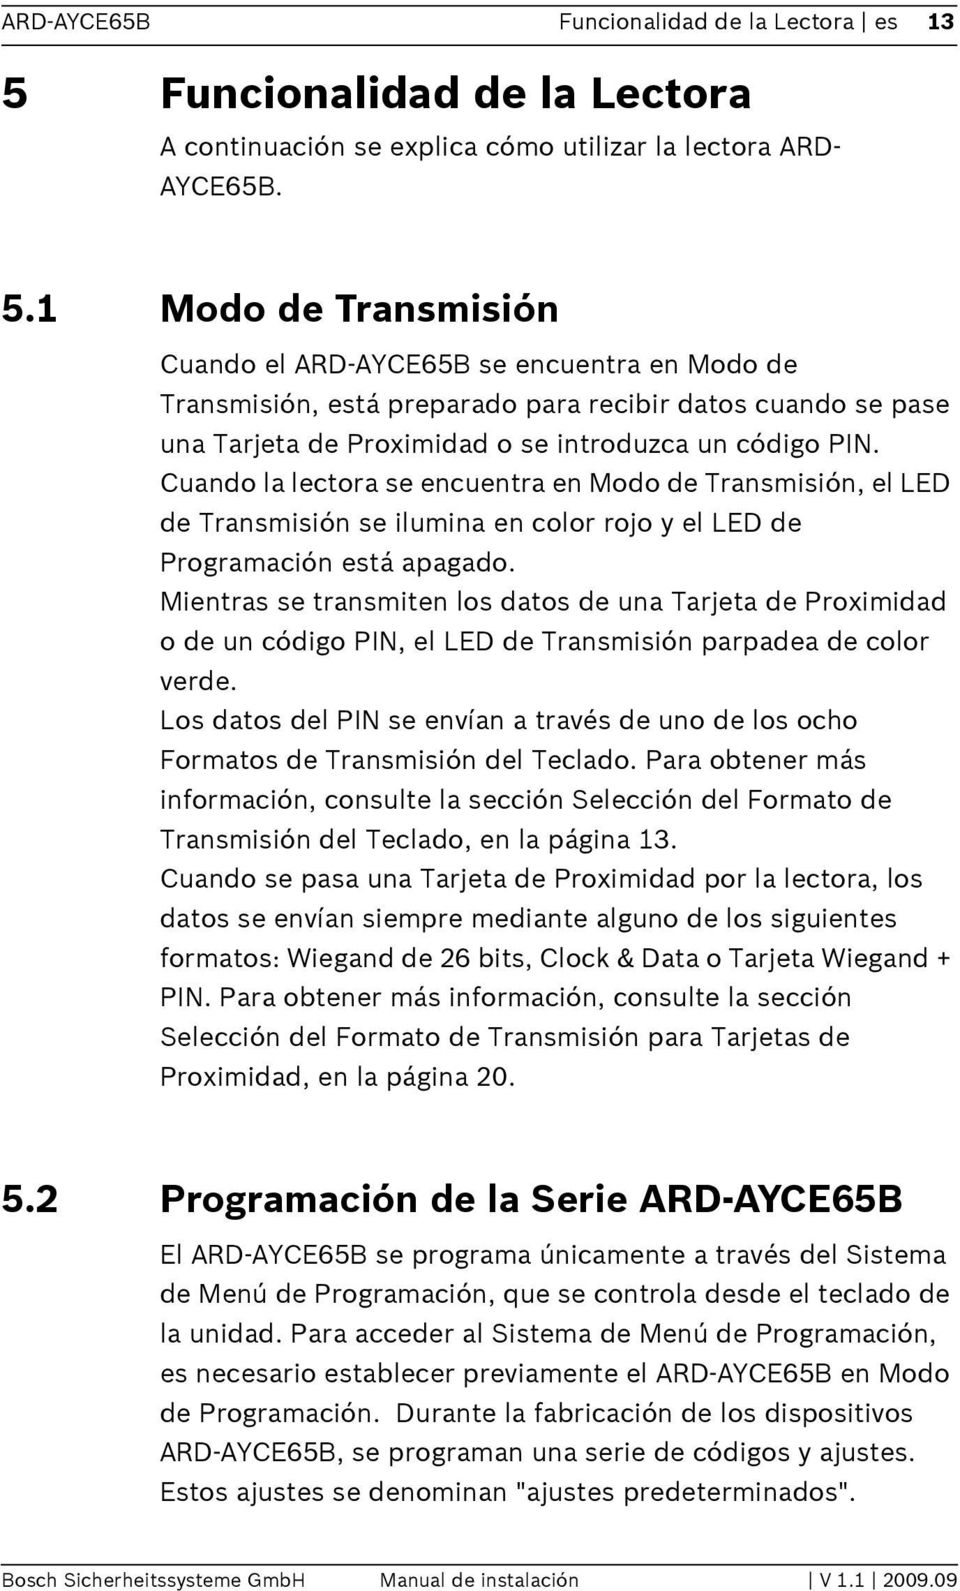 1 Modo de Transmisión Cuando el ARD-AYCE65B se encuentra en Modo de Transmisión, está preparado para recibir datos cuando se pase una Tarjeta de Proximidad o se introduzca un código PIN.